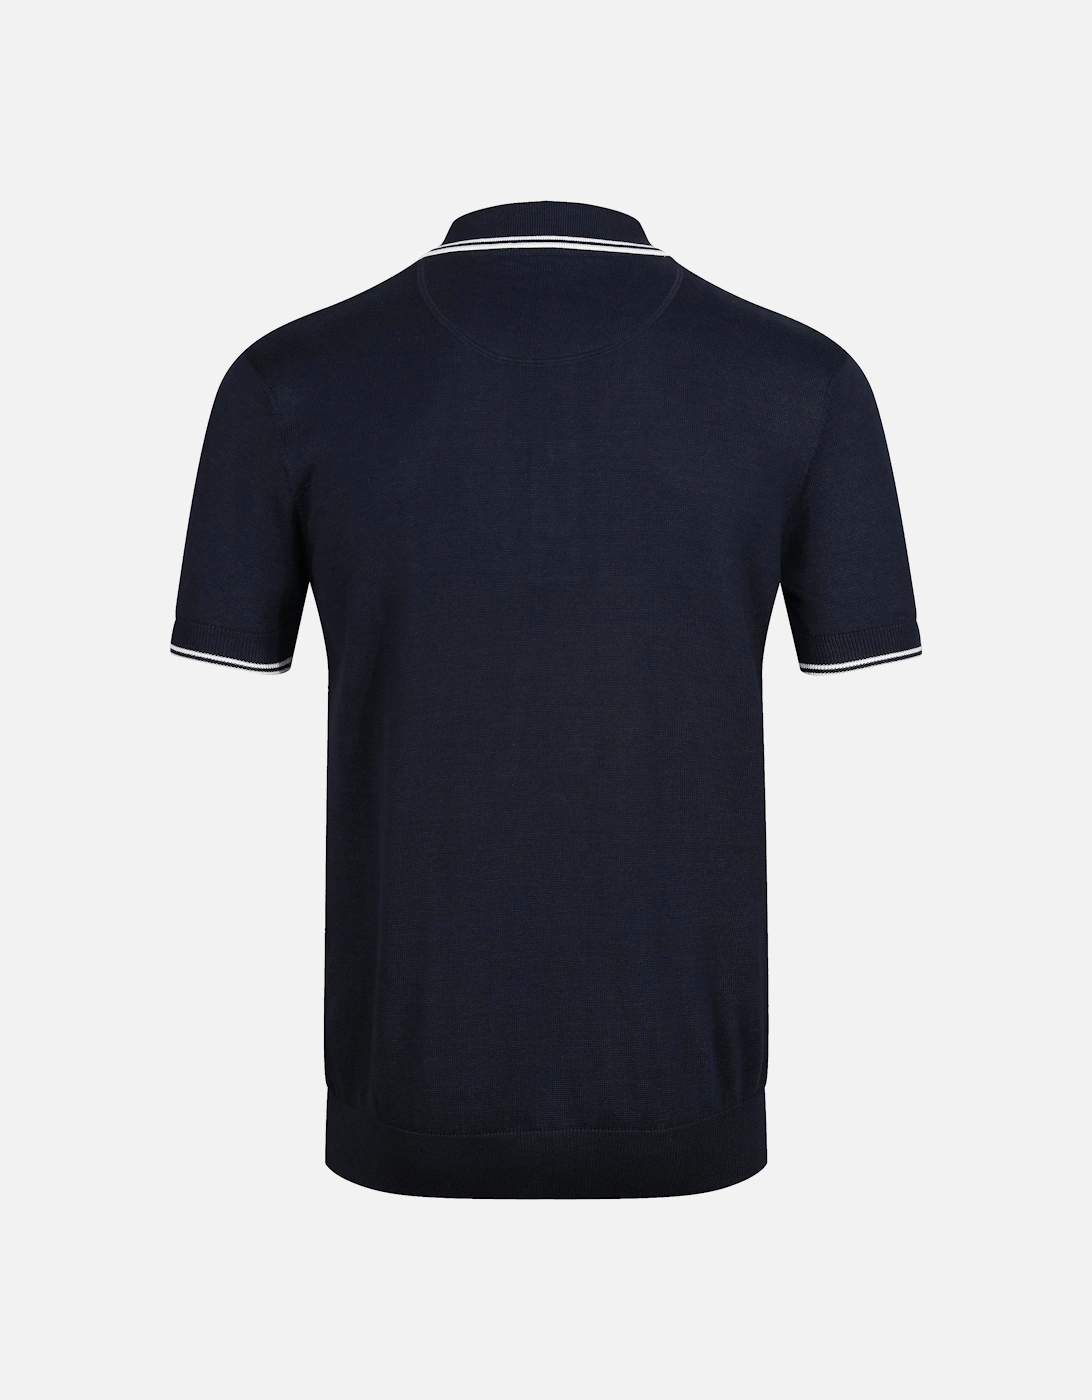 Retro Mod Self Stripe Fine Gauge Mens Polo Shirt - Navy